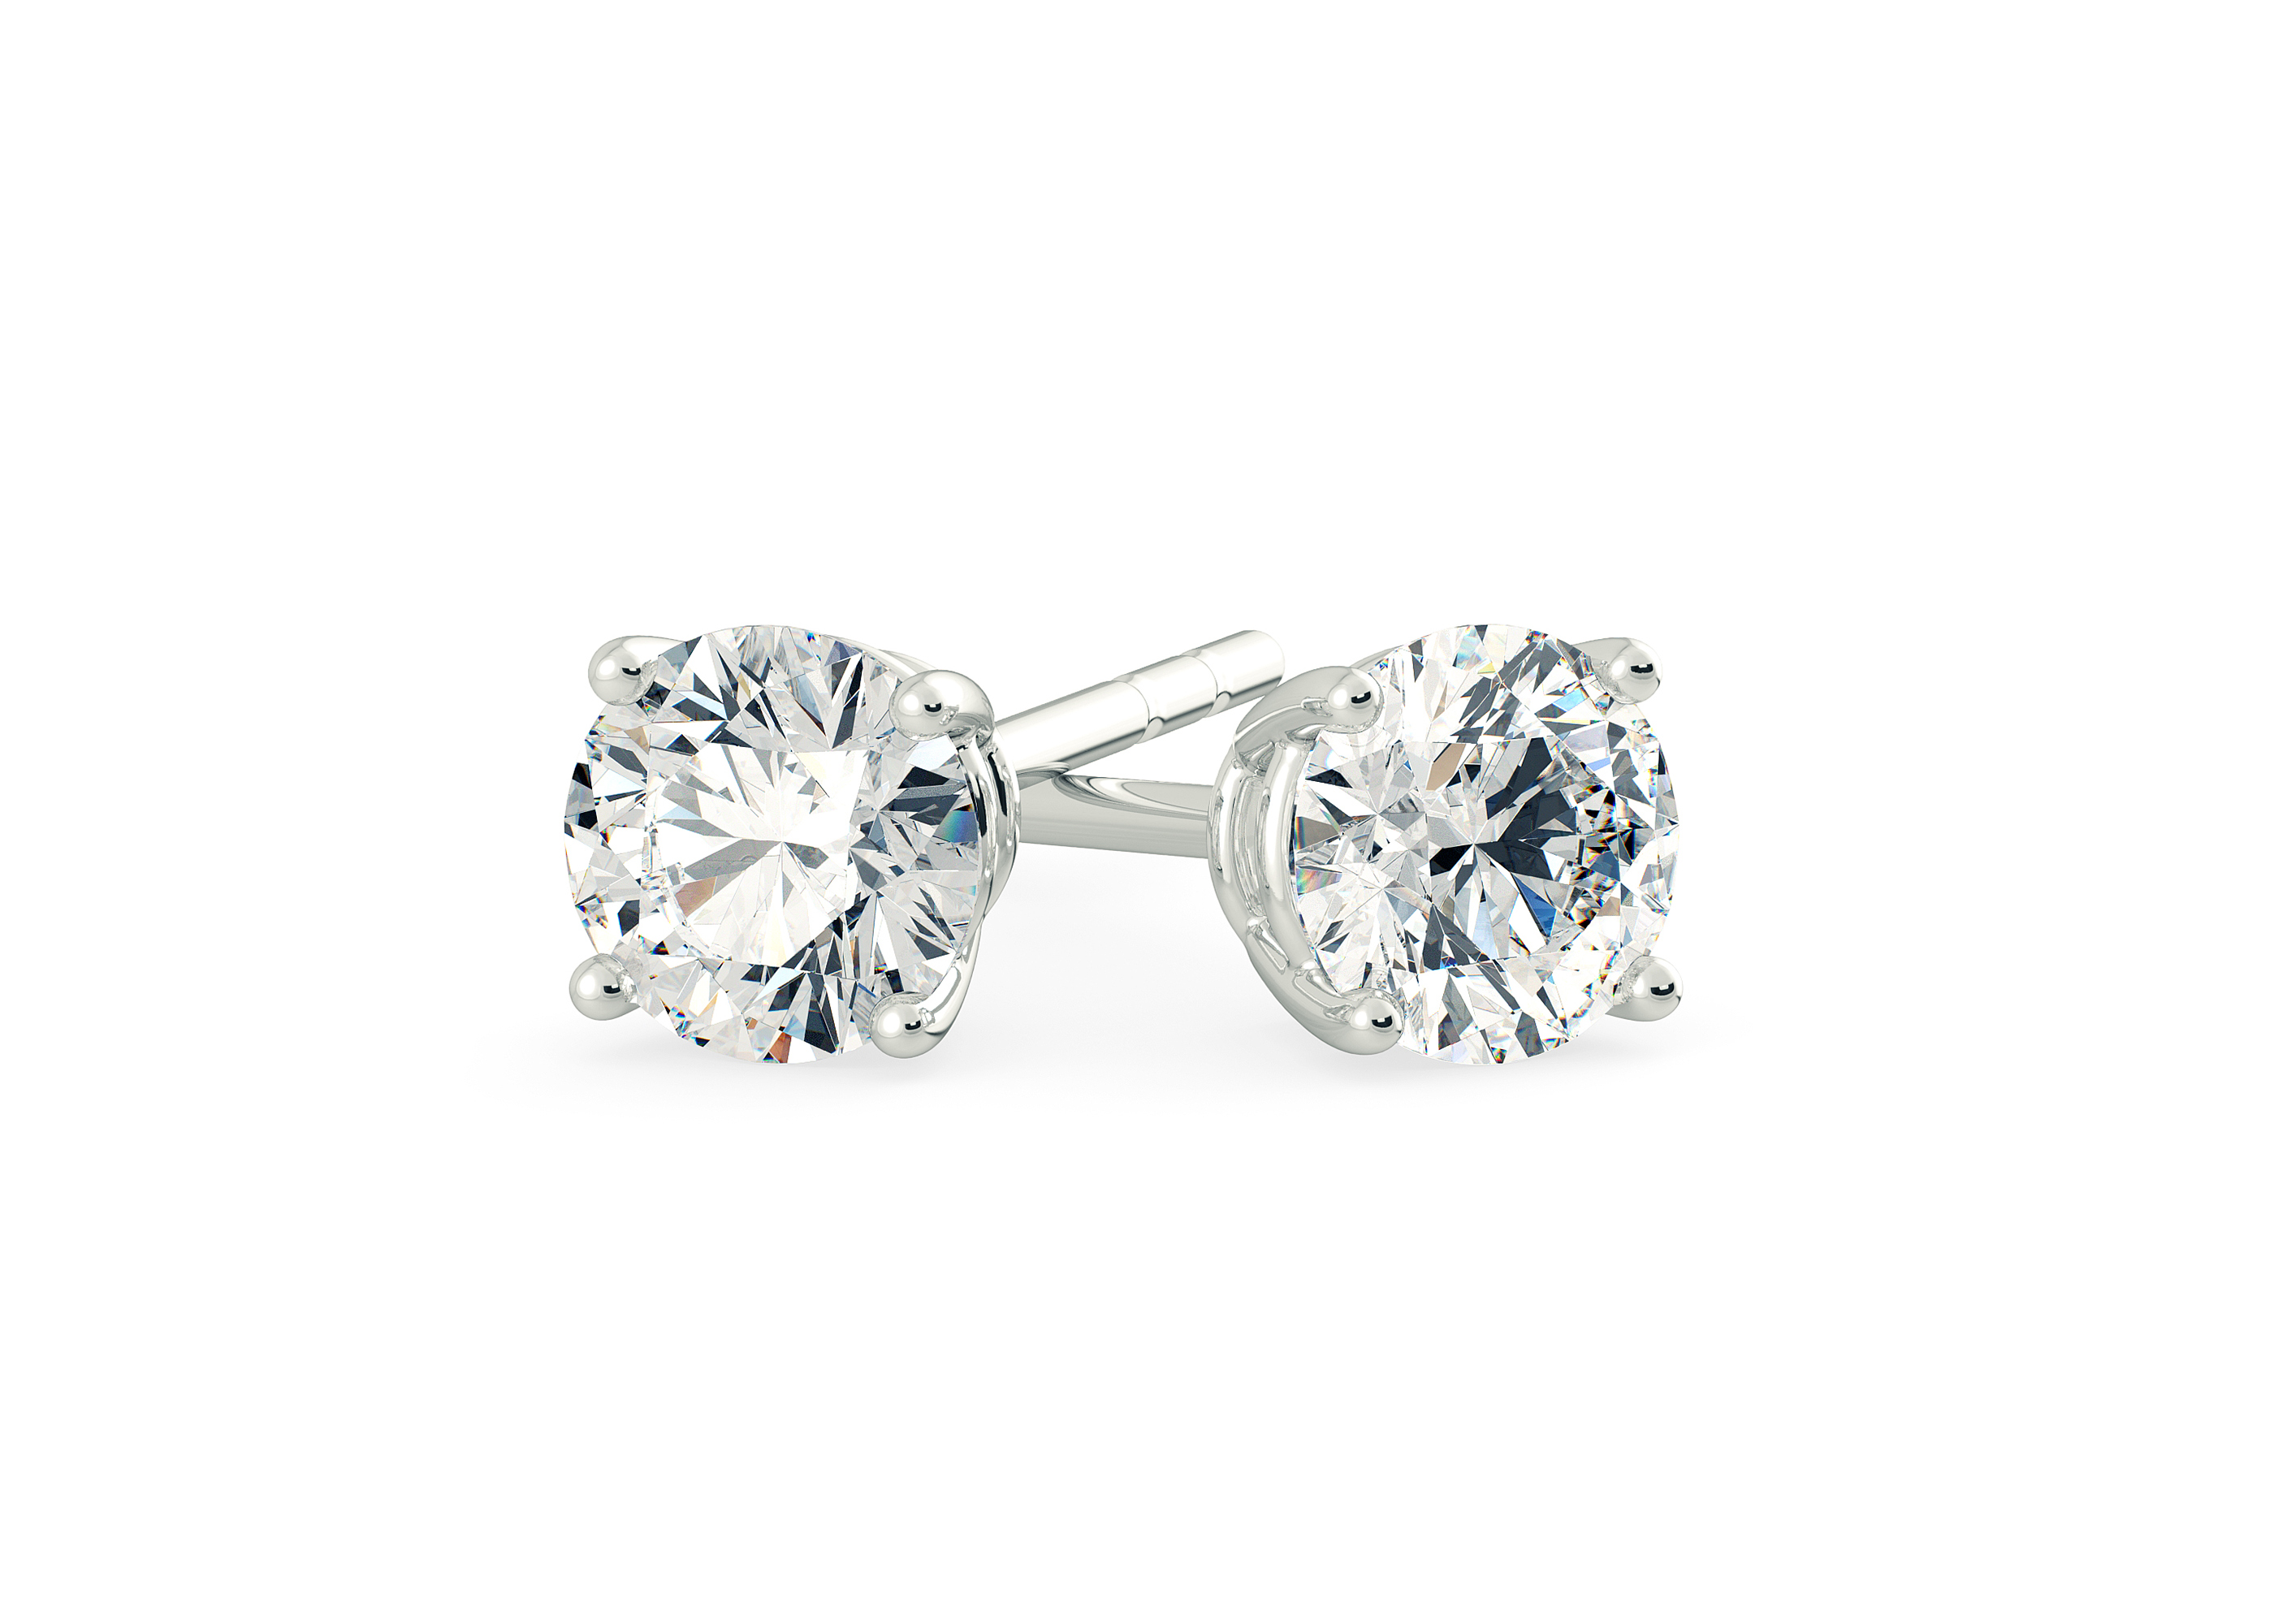 Two Carat Round Brilliant Diamond Stud Earrings in Platinum 950